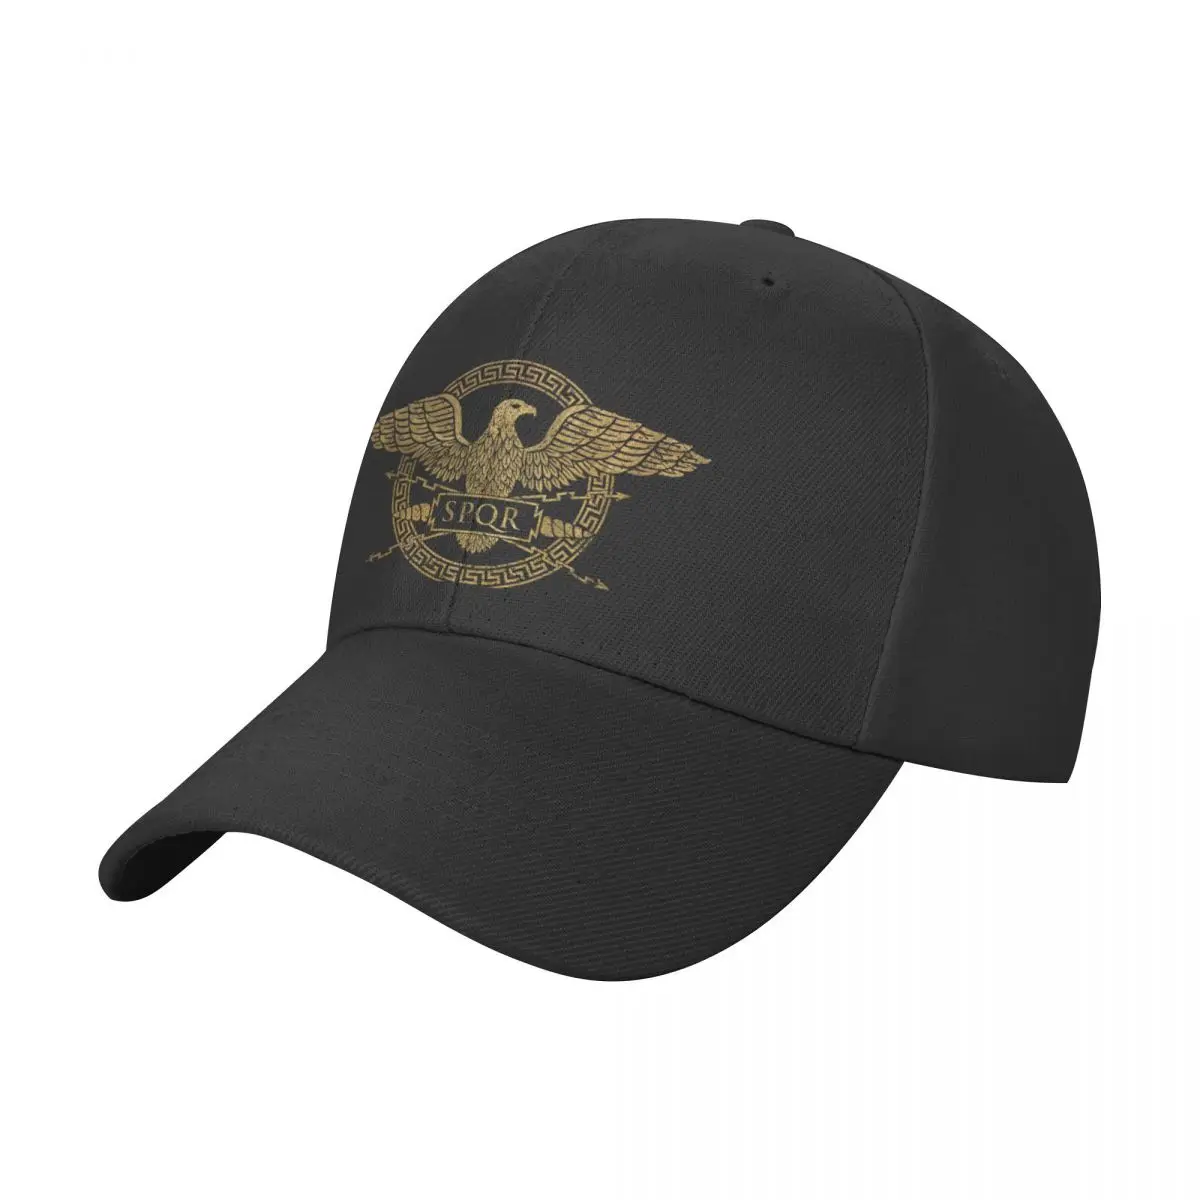 

Бейсболка SPQR с эмблемой Римской империи орла, кепки для рыбалки, шляпа для рыбалки, Шляпа Дерби, винтажная мужская шляпа для женщин и мужчин